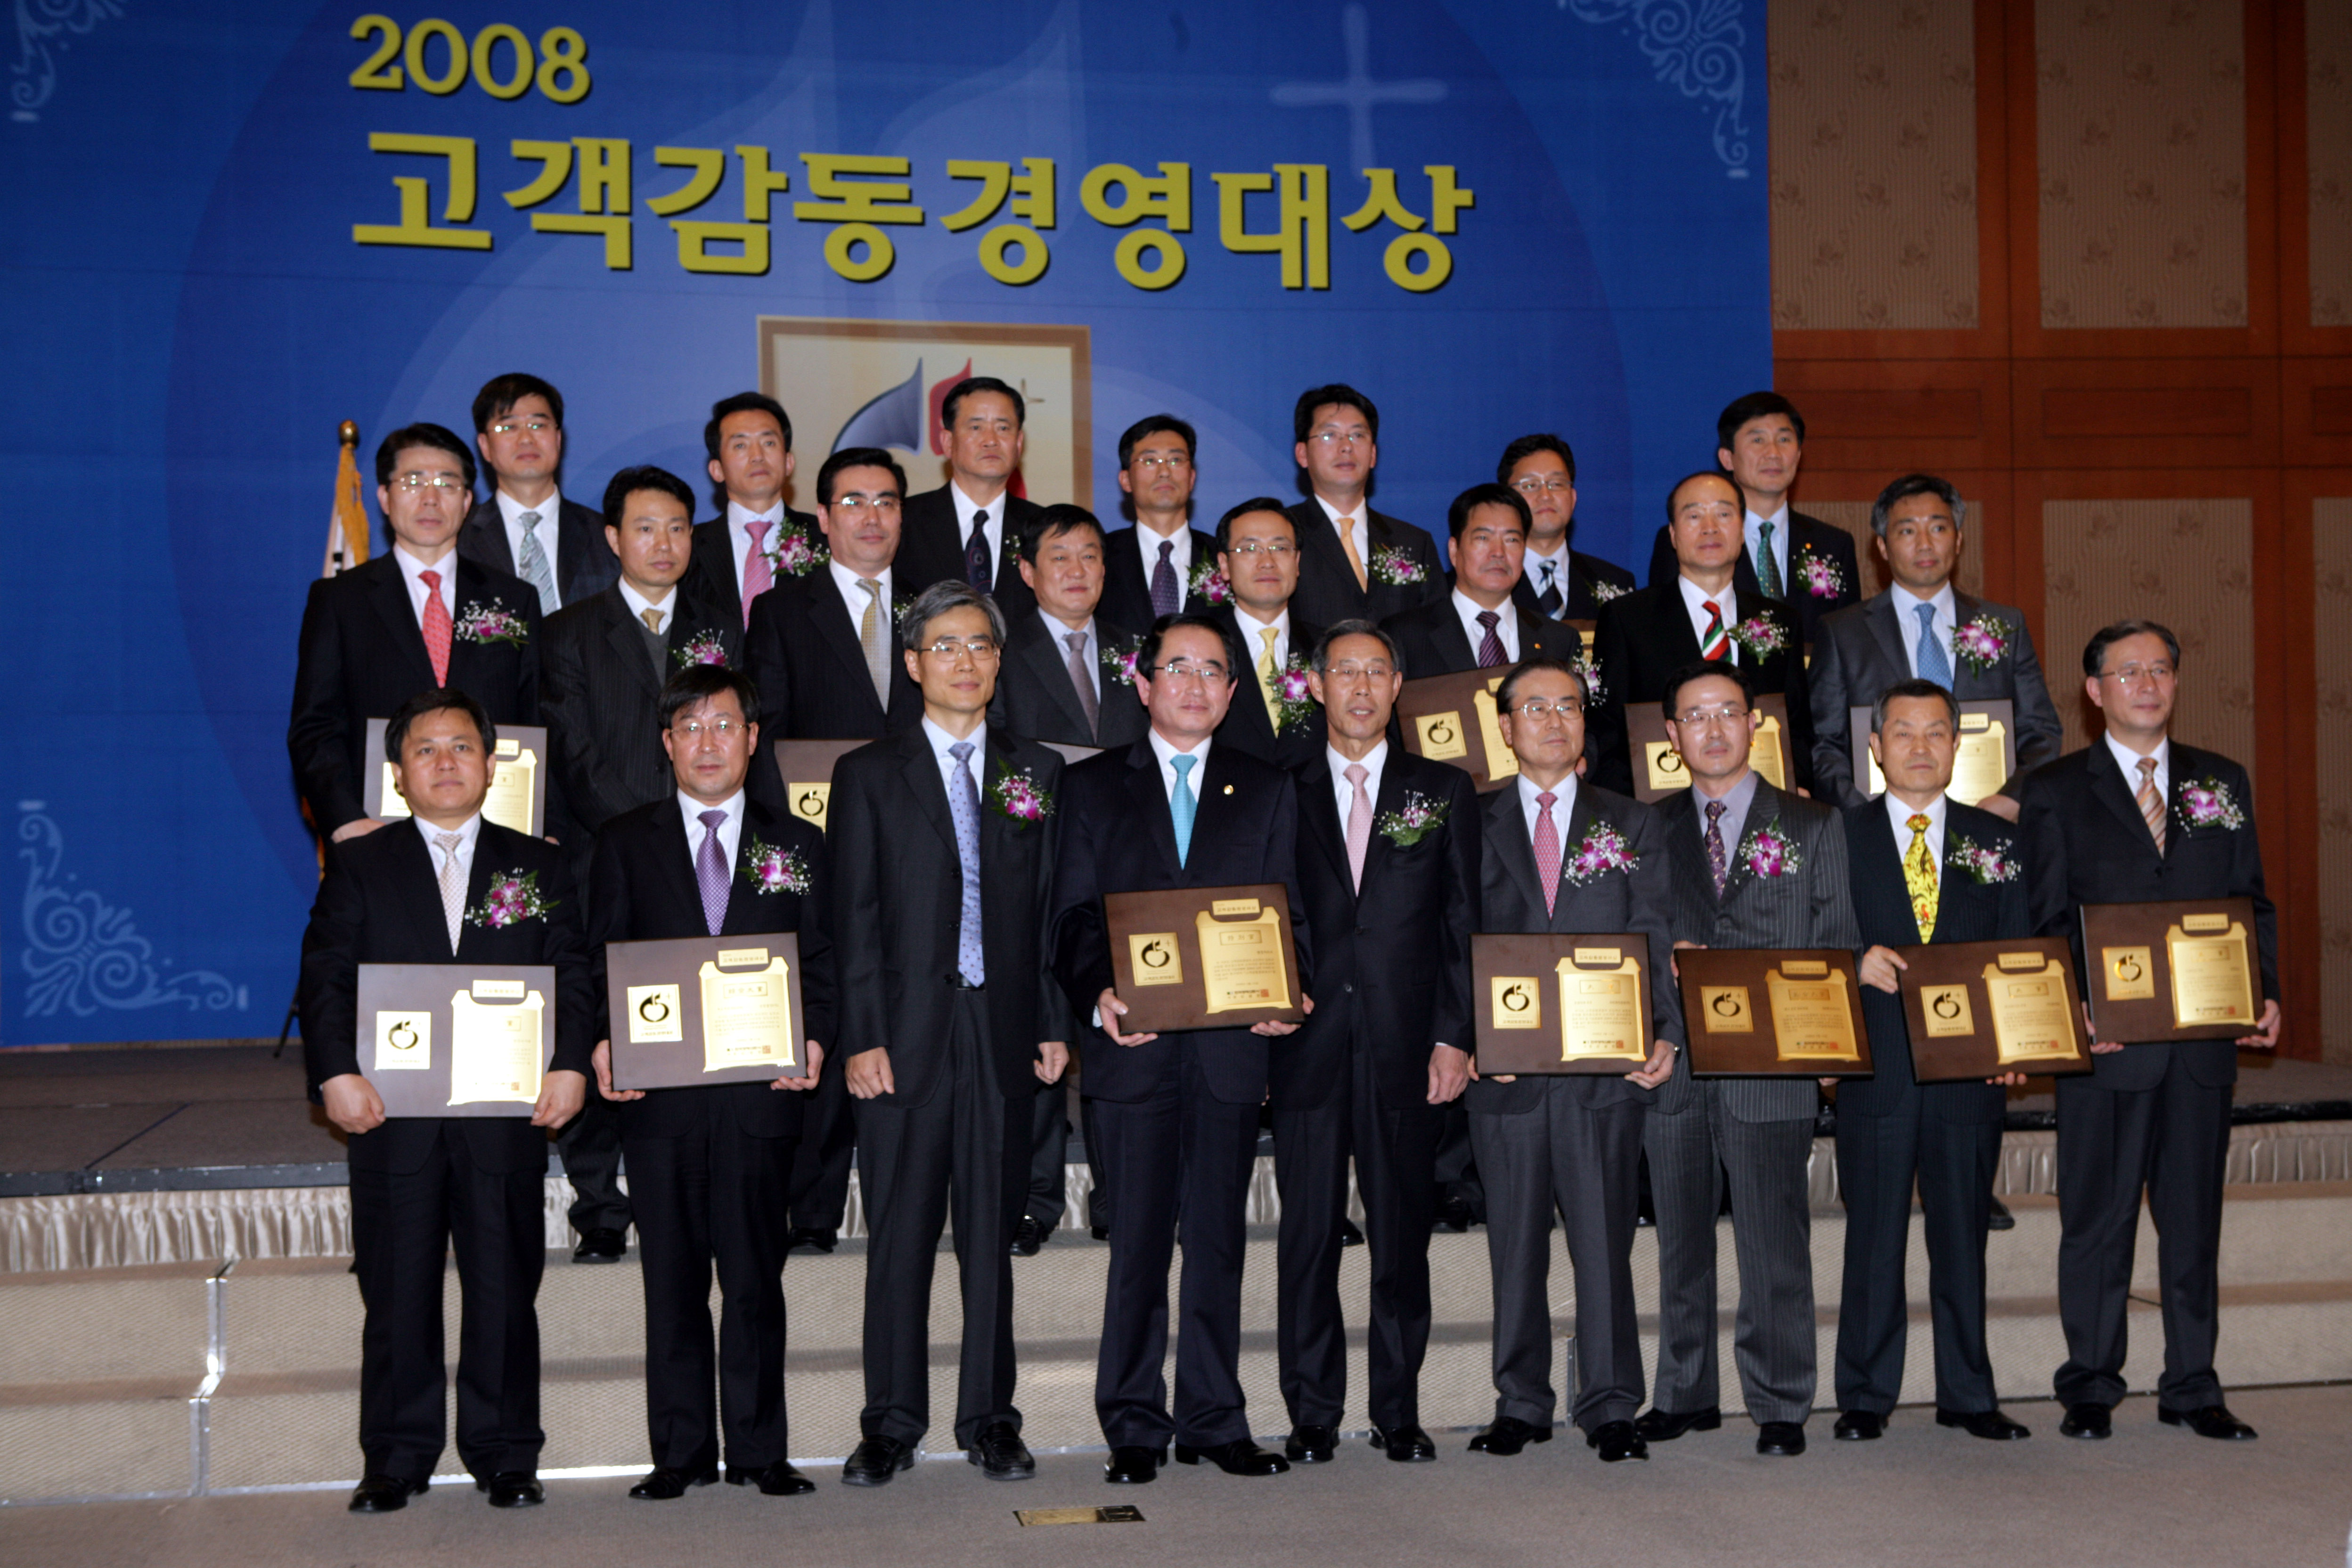 행정자치부, 2008 고객감동경영대상 '특별상' 수상